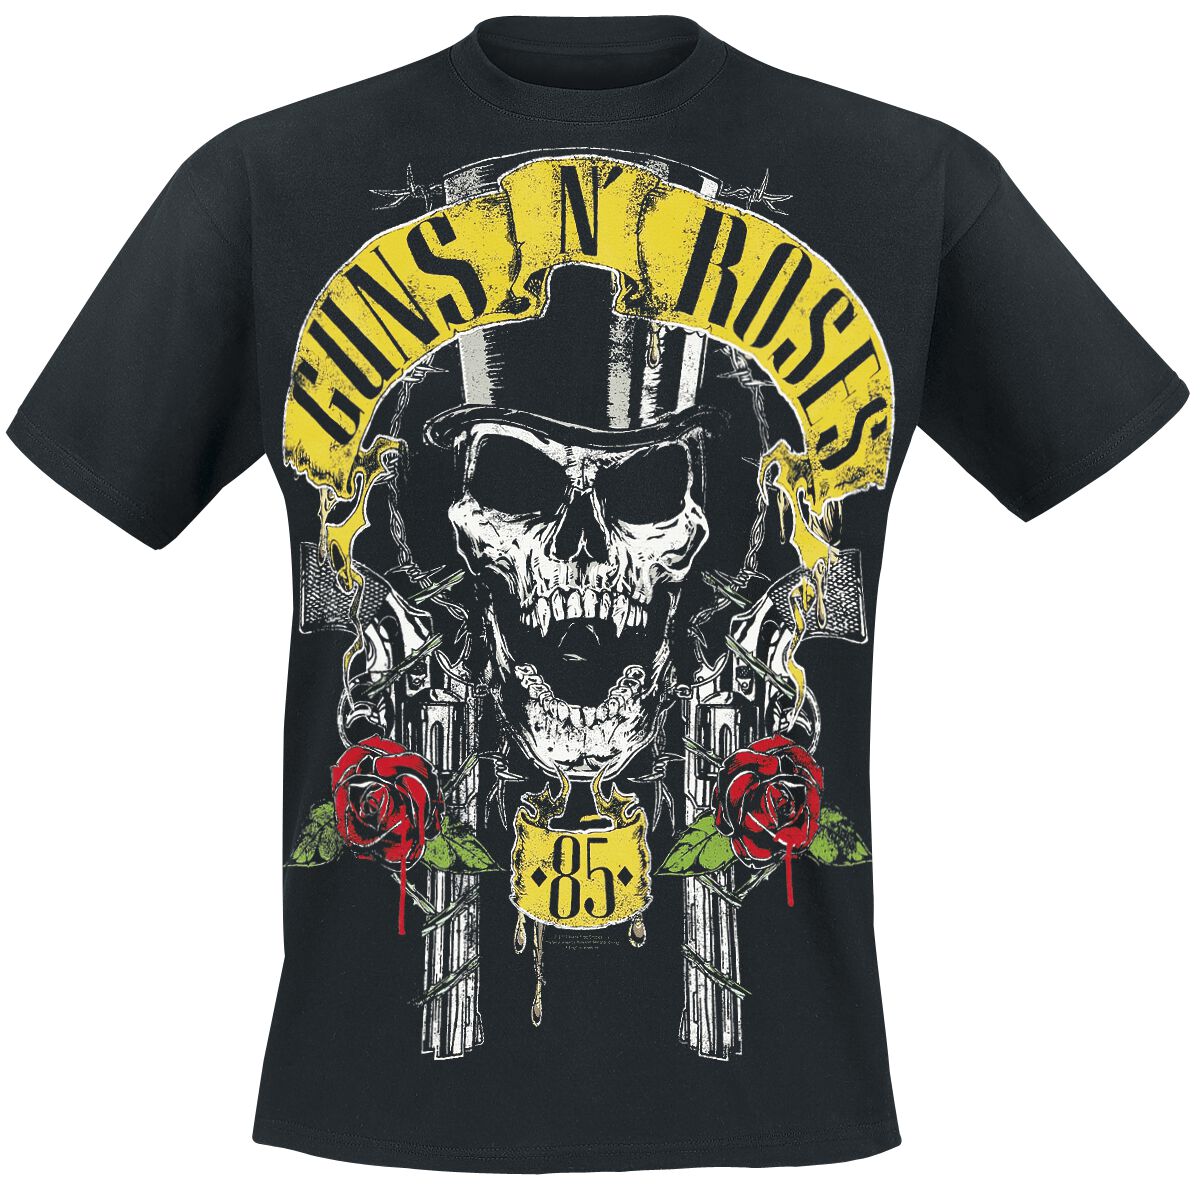 Guns N` Roses T-Shirt - Top Hat - S bis 5XL - für Männer - Größe M - schwarz  - Lizenziertes Merchandise!